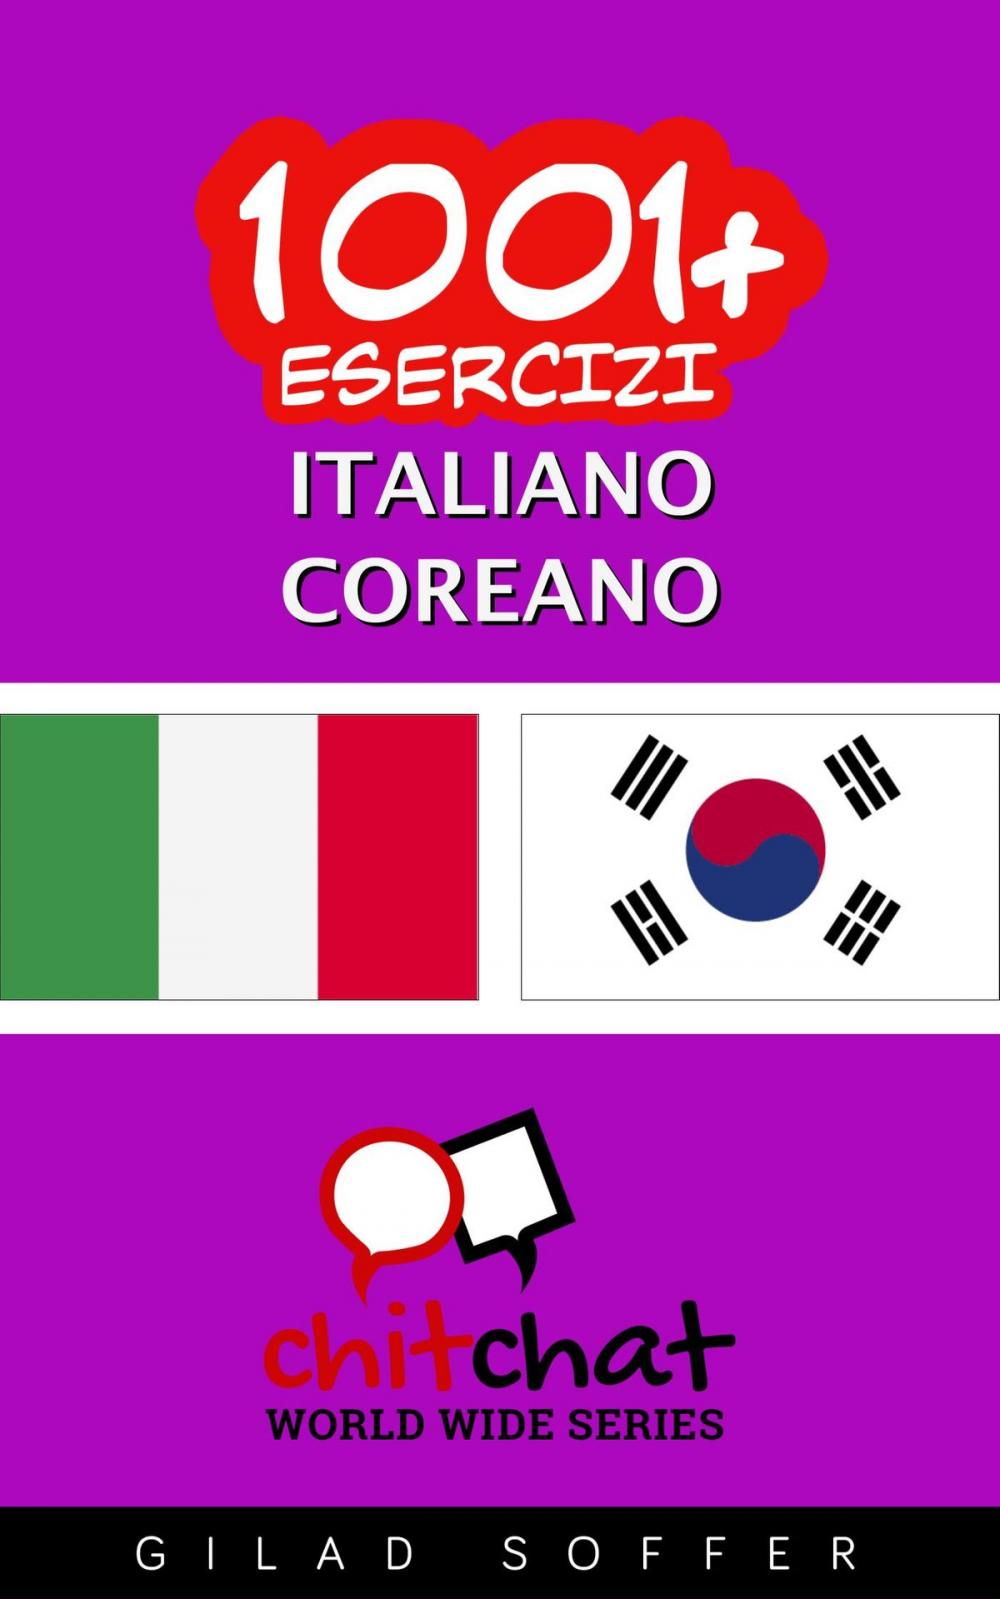 Big bigCover of 1001+ Esercizi Italiano - Coreano